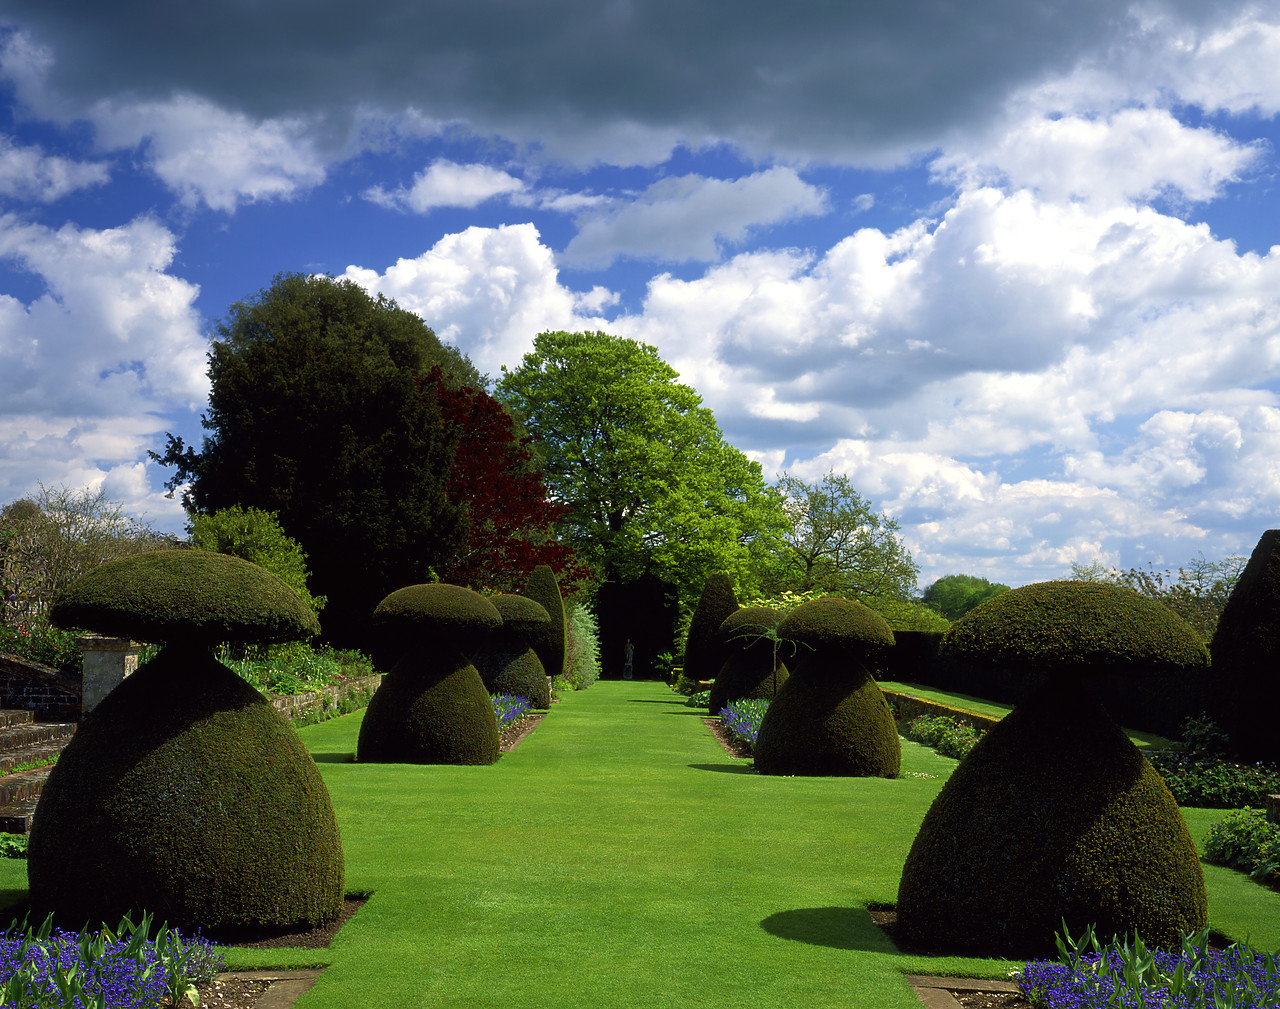 #050125-3 - Hinton Ampner Garden, Bramdean, Hampshire, England